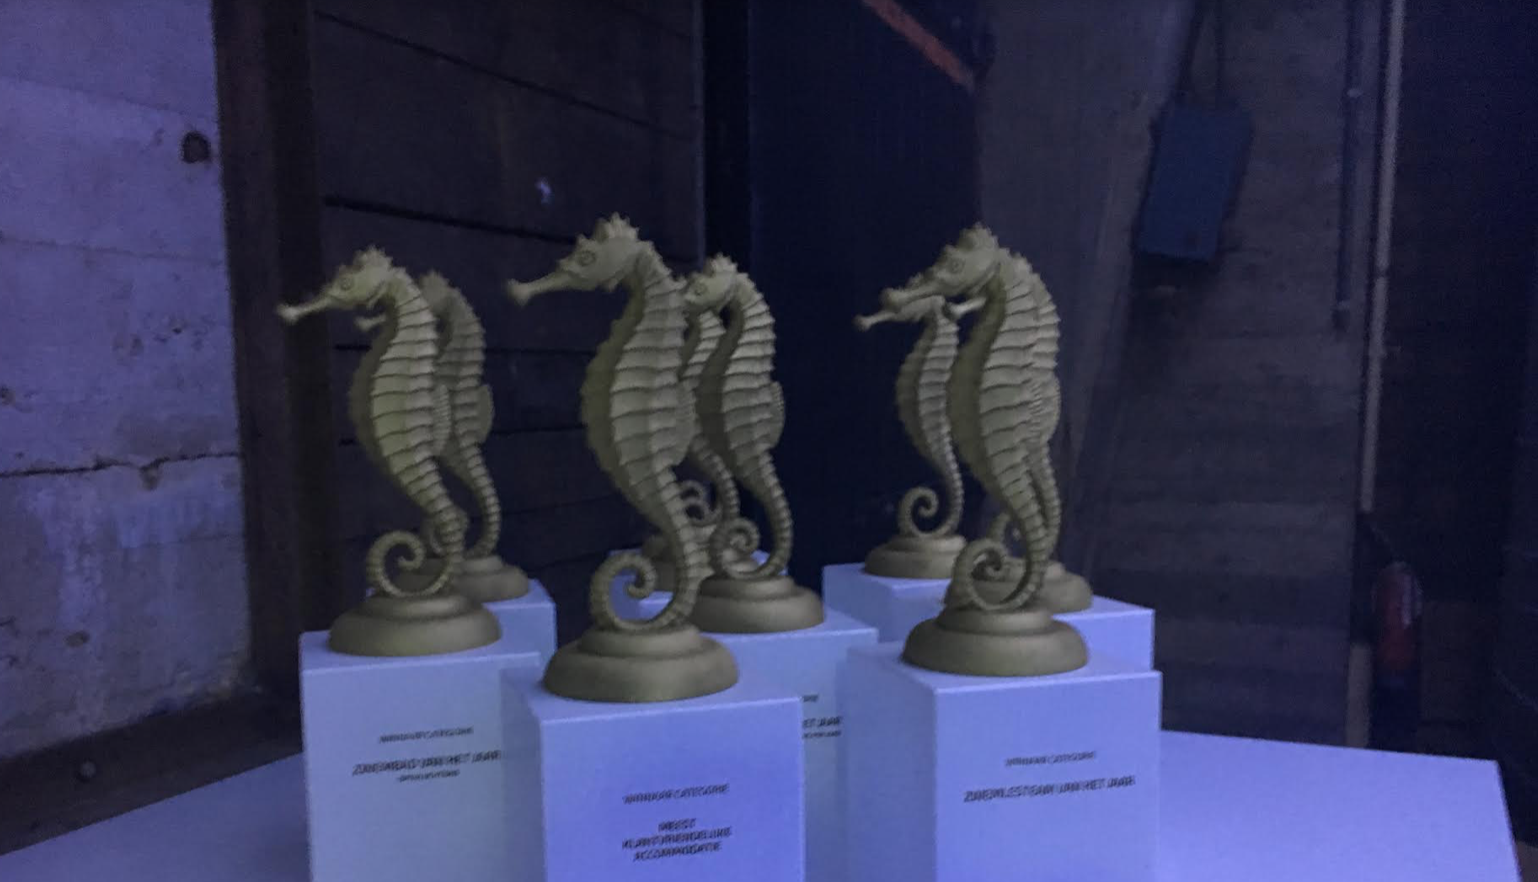 Winnaars Awards bekendgemaakt tijdens feestelijk slot ZBBD17